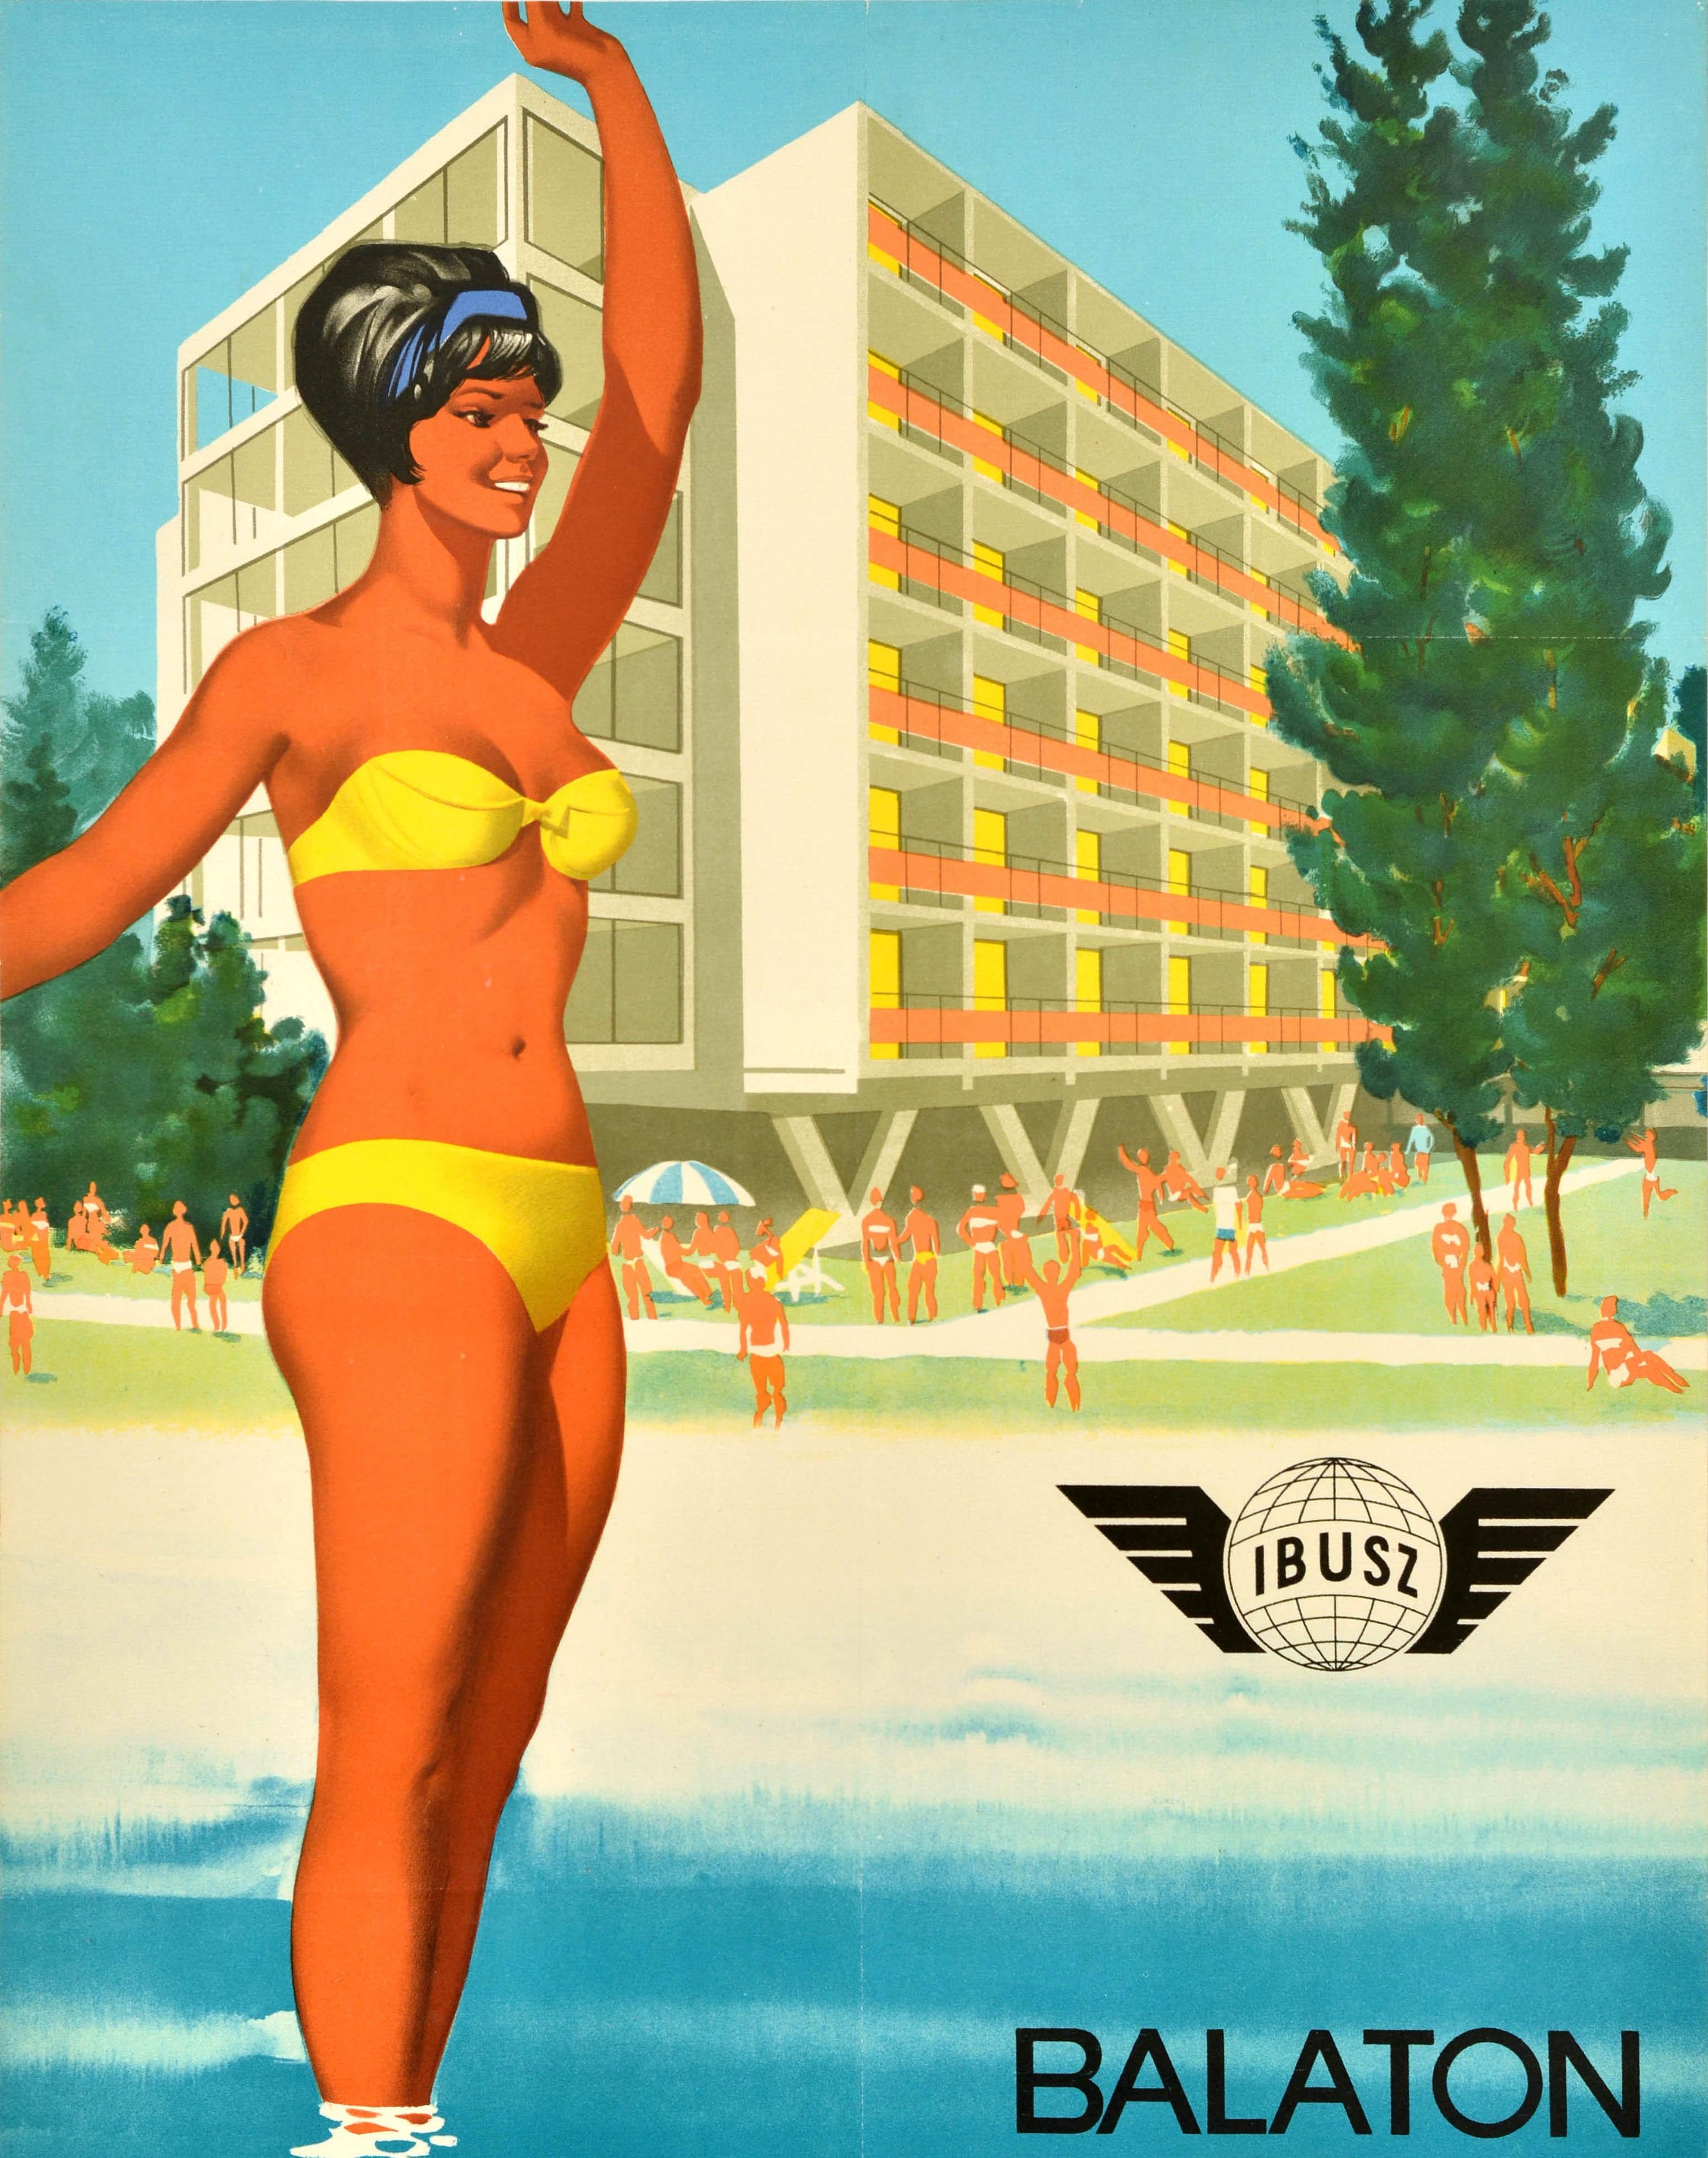 Originales Vintage-Reiseplakat für den Ferienort Balaton The New Holiday Paradise / Balaton Det Nya Semesterparadiset mit einer farbenfrohen Illustration einer lächelnden Dame im gelben Bikini-Badeanzug, die im Wasser steht, während sich die